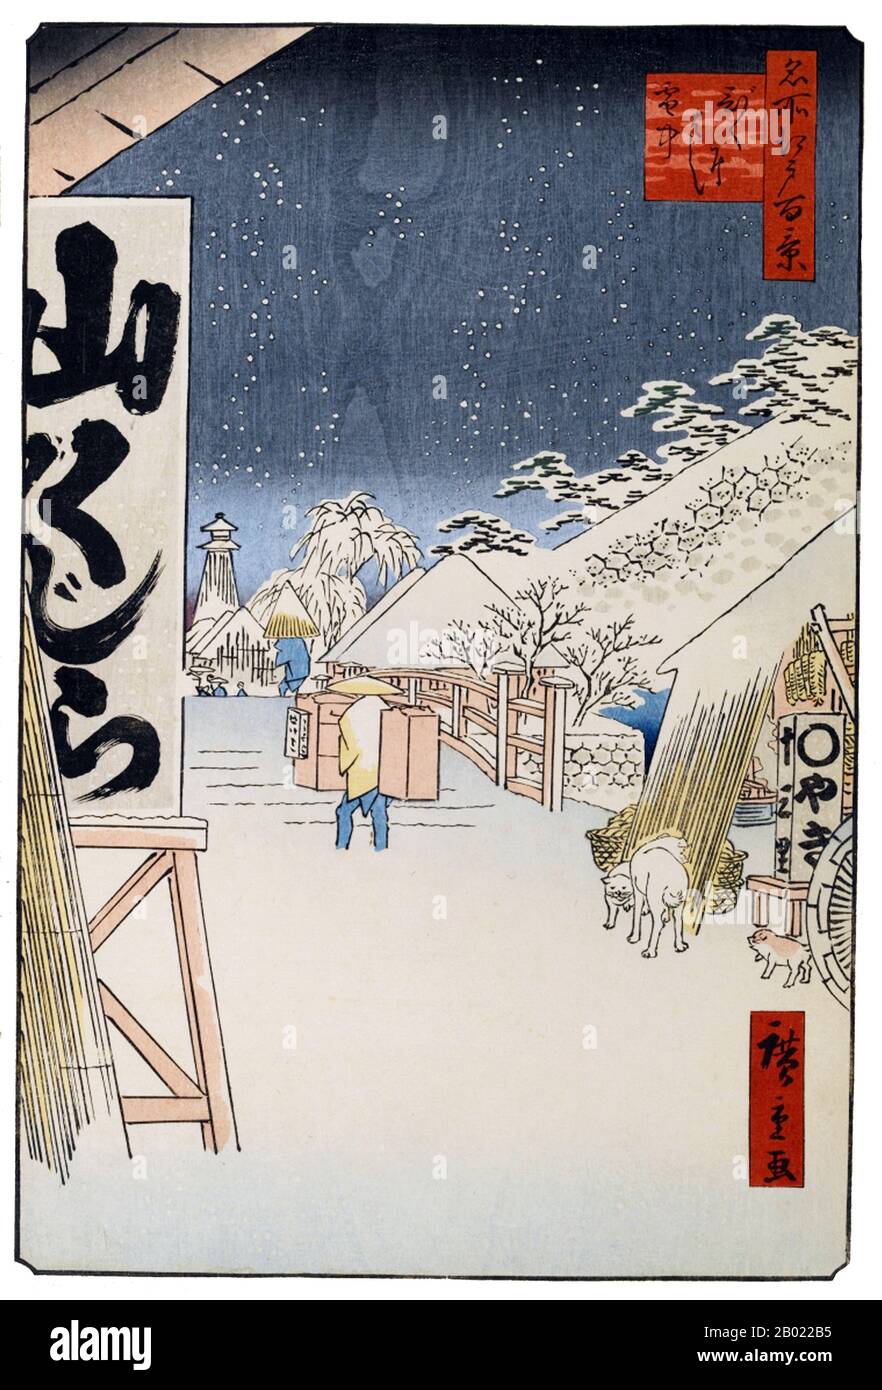 Le Cento Famose Viste di Edo (名所江戸百景) di Hiroshige, in realtà composte da 118 paesaggi di legno e scene di genere della Tokyo della metà del 19th secolo, è una delle più grandi realizzazioni dell'arte giapponese. La serie include molte delle più famose stampe di Hiroshige. Rappresenta una celebrazione dello stile e del mondo della più bella fioritura culturale del Giappone alla fine dello Shogunate Tokugawa. Il gruppo invernale, numeri da 99 a 118, inizia con una scena del Tempio di Kinryūzan ad Akasaka, con uno schema colore rosso su bianco che è riservato per occasioni propizie. La neve segnala immediatamente la stagione ed è depi Foto Stock